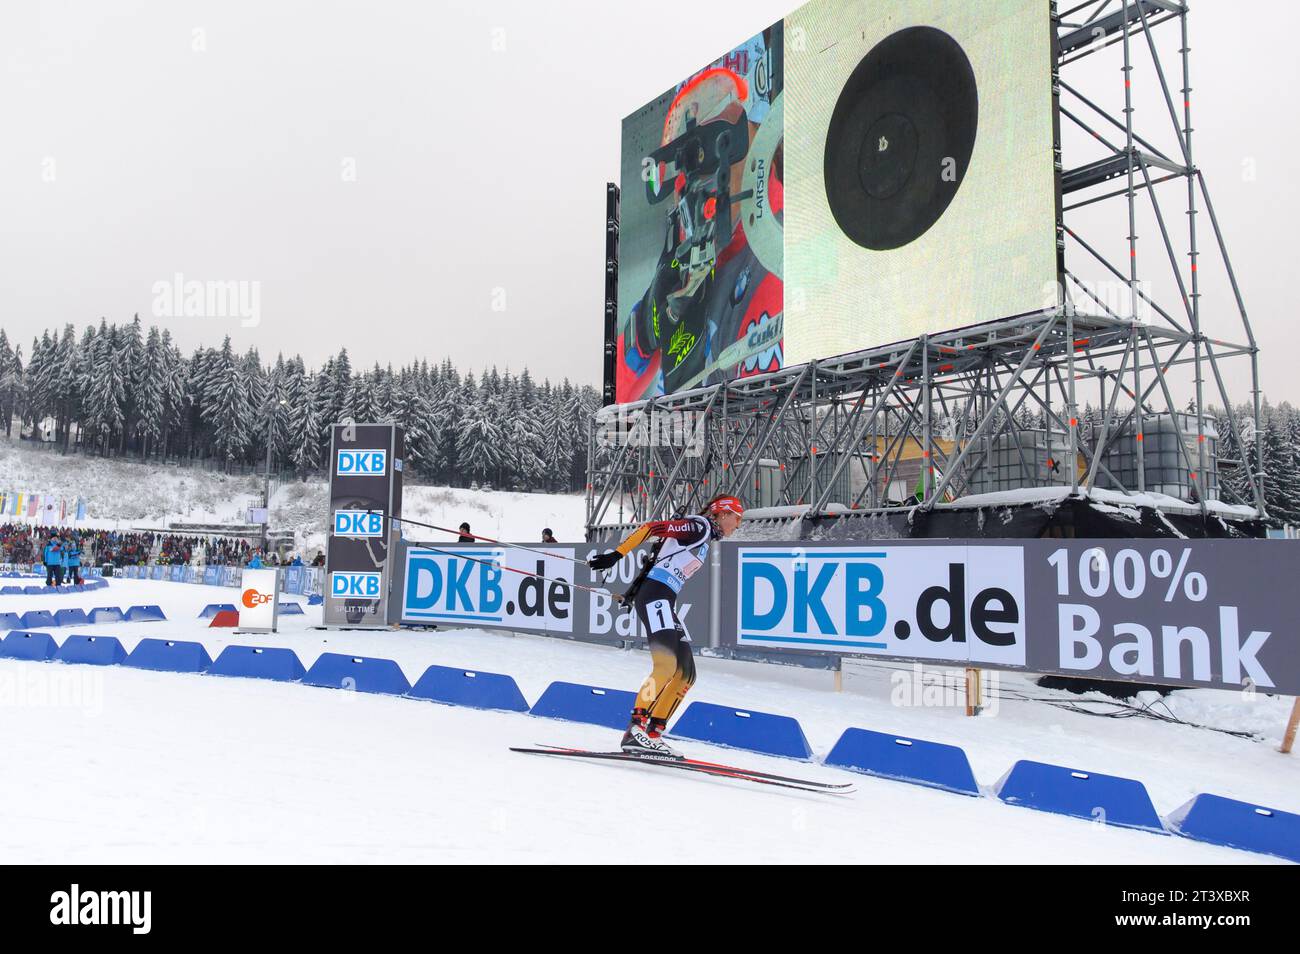 Luise Kummer AKTION Biathlon Welt Cup 4 x 6 KM Staffel der Frauen in Oberhof, Deutschland am 07.01.2015 Stock Photo